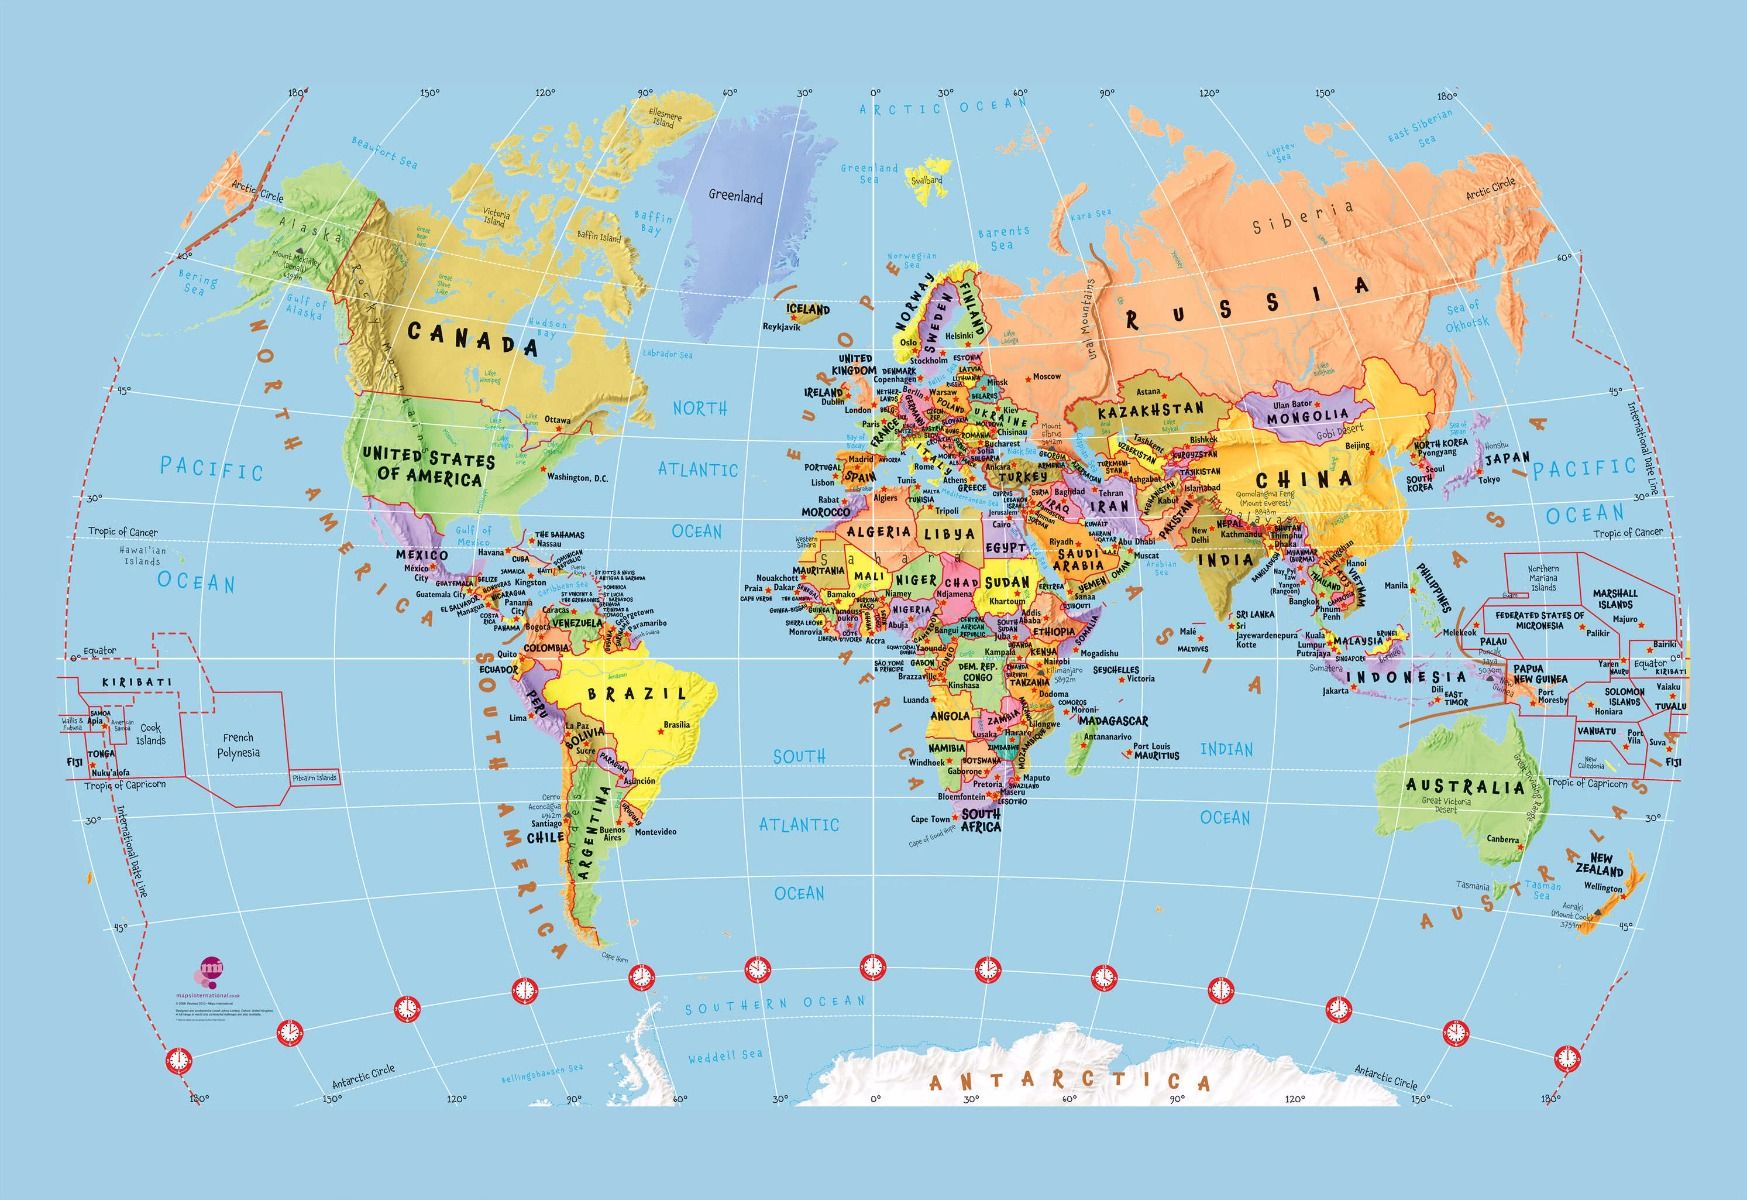 キッズマップ壁紙,地図,アトラス,世界